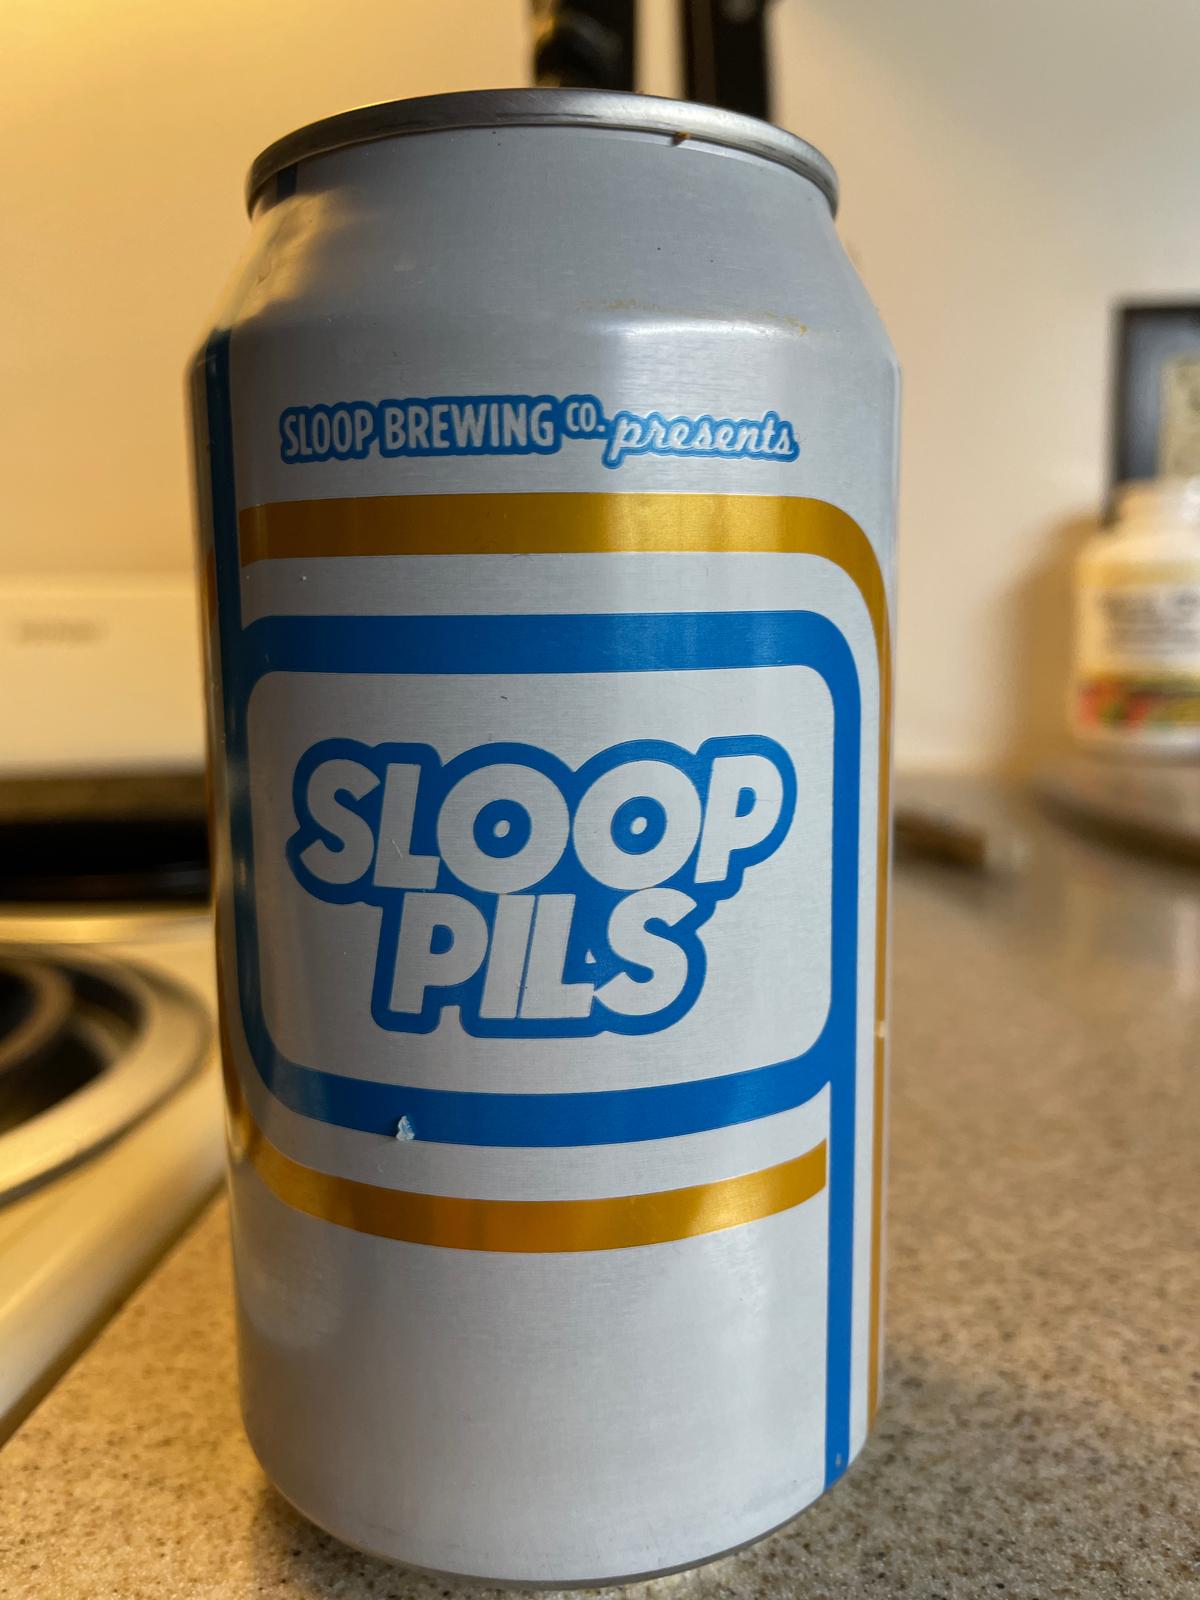 Sloop Pils